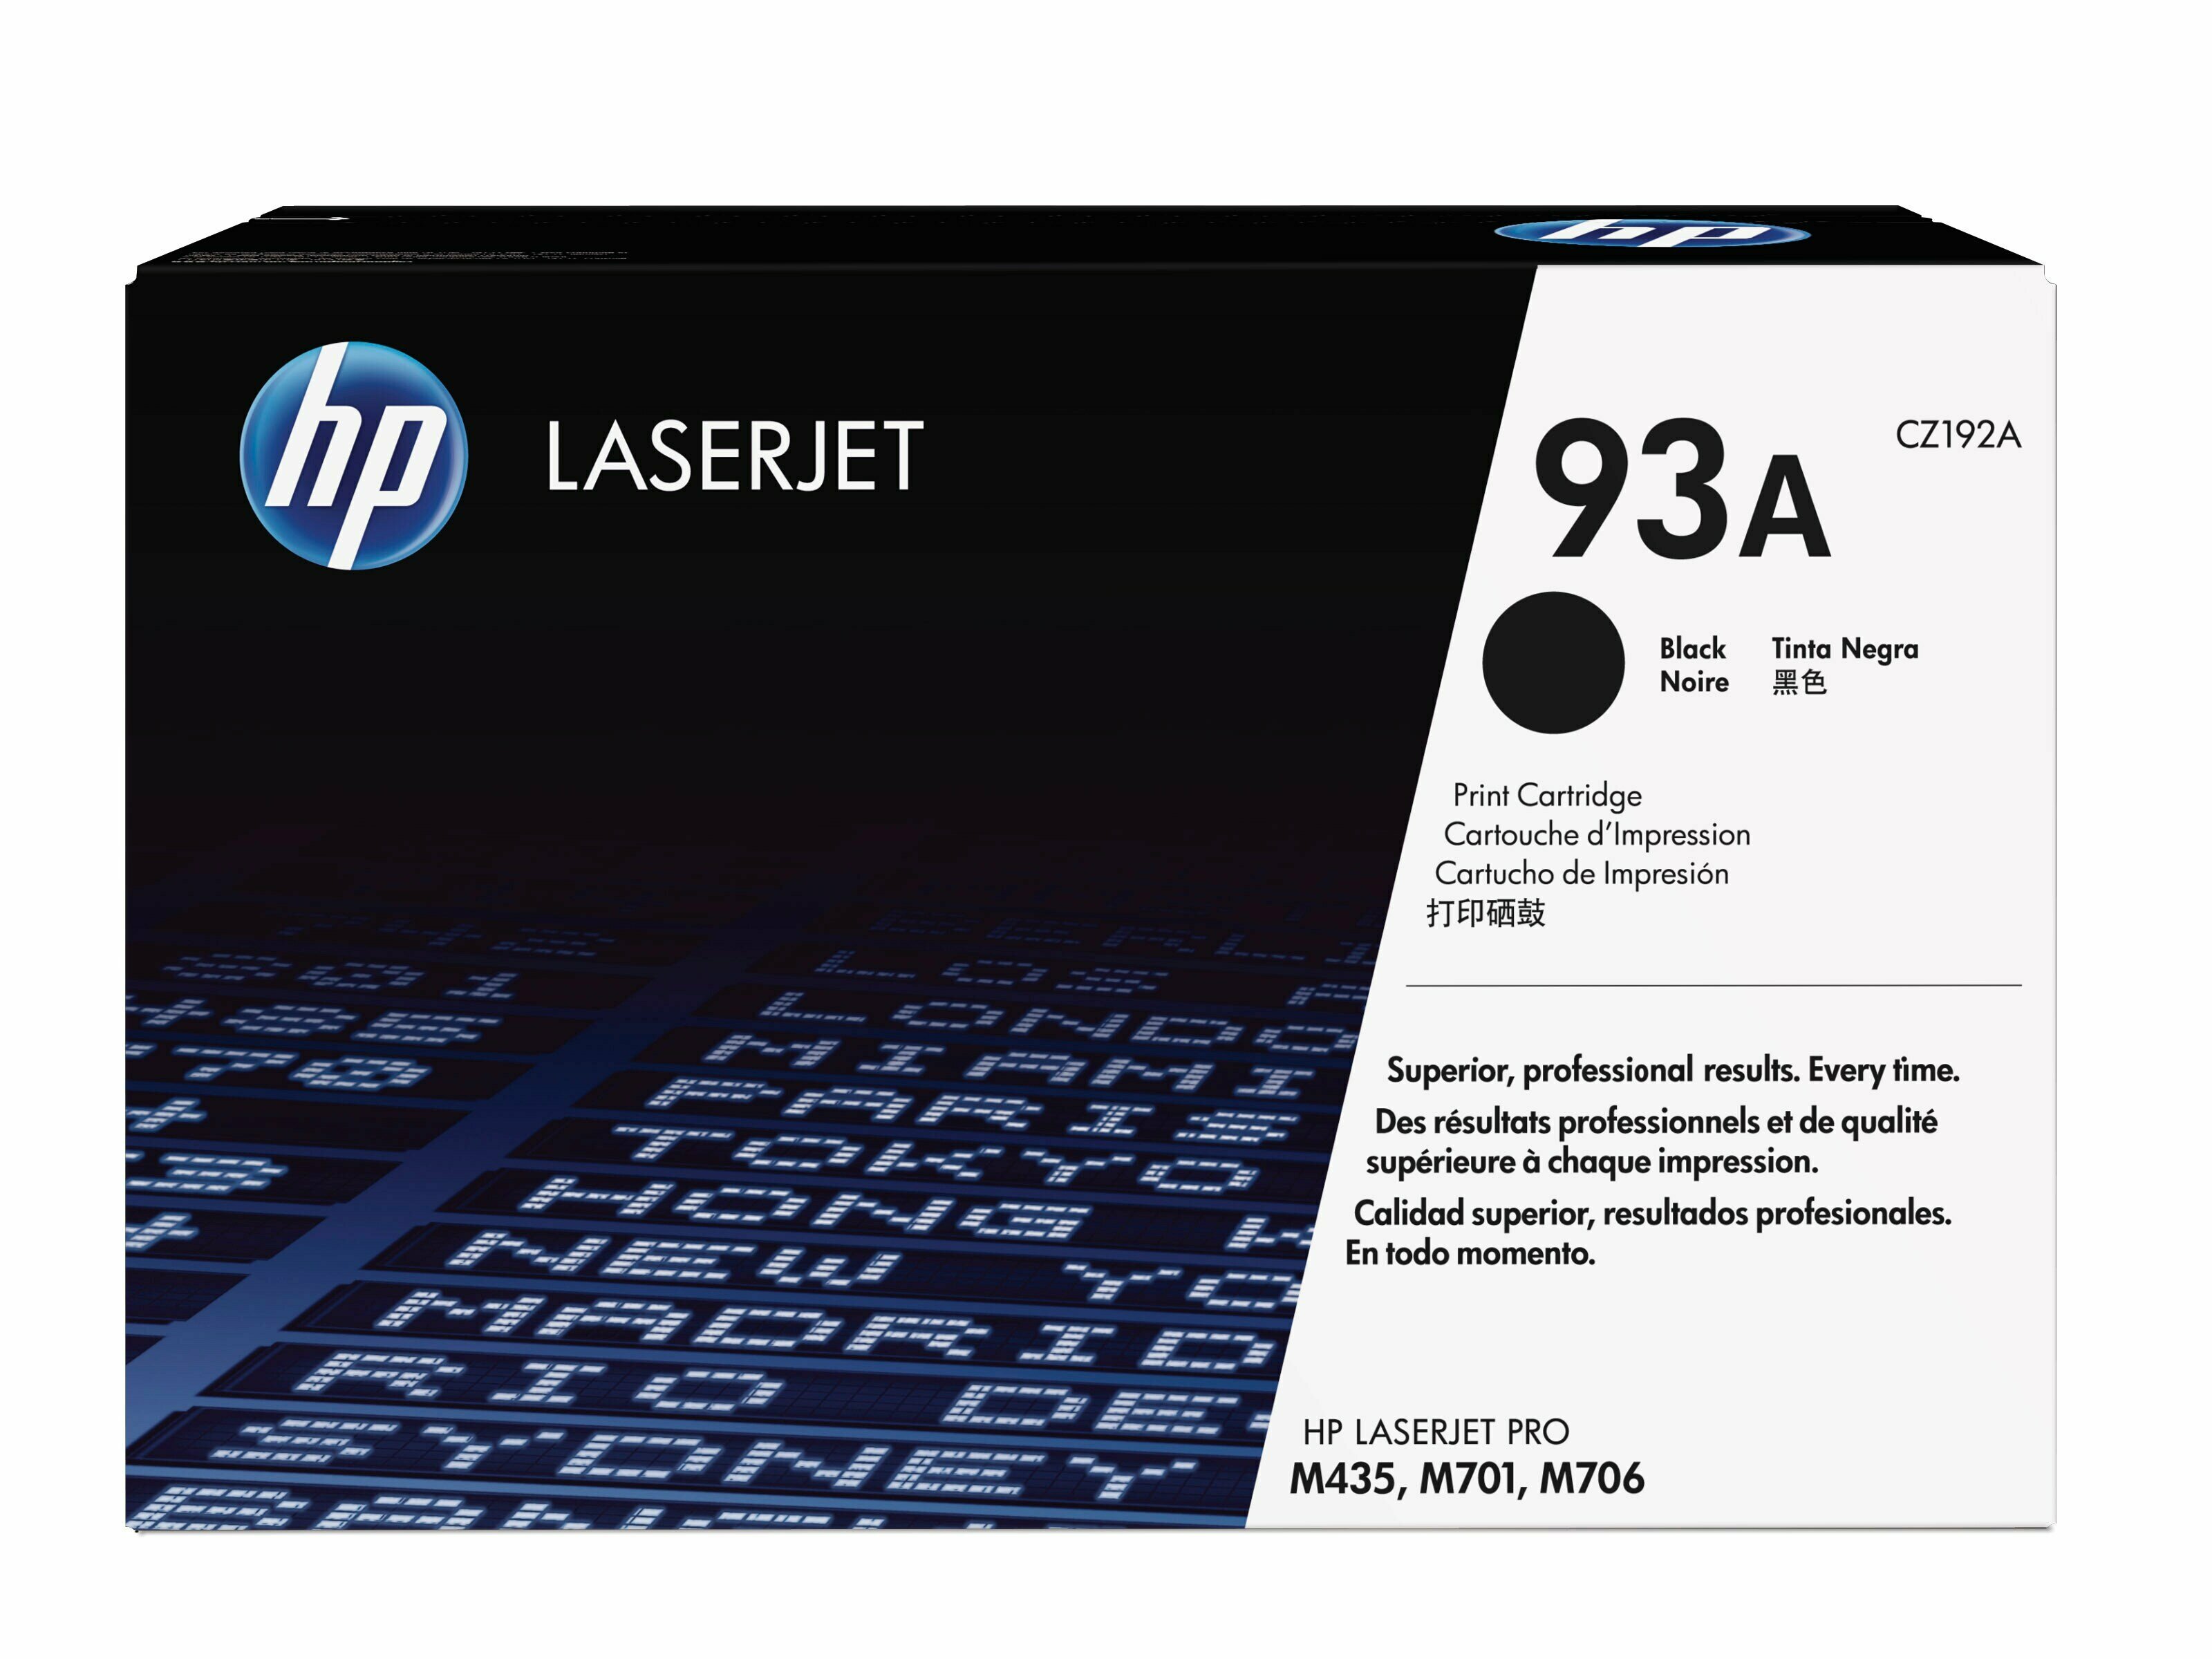 Картридж для печати HP Картридж HP 93A CZ192A вид печати лазерный, цвет Черный, емкость